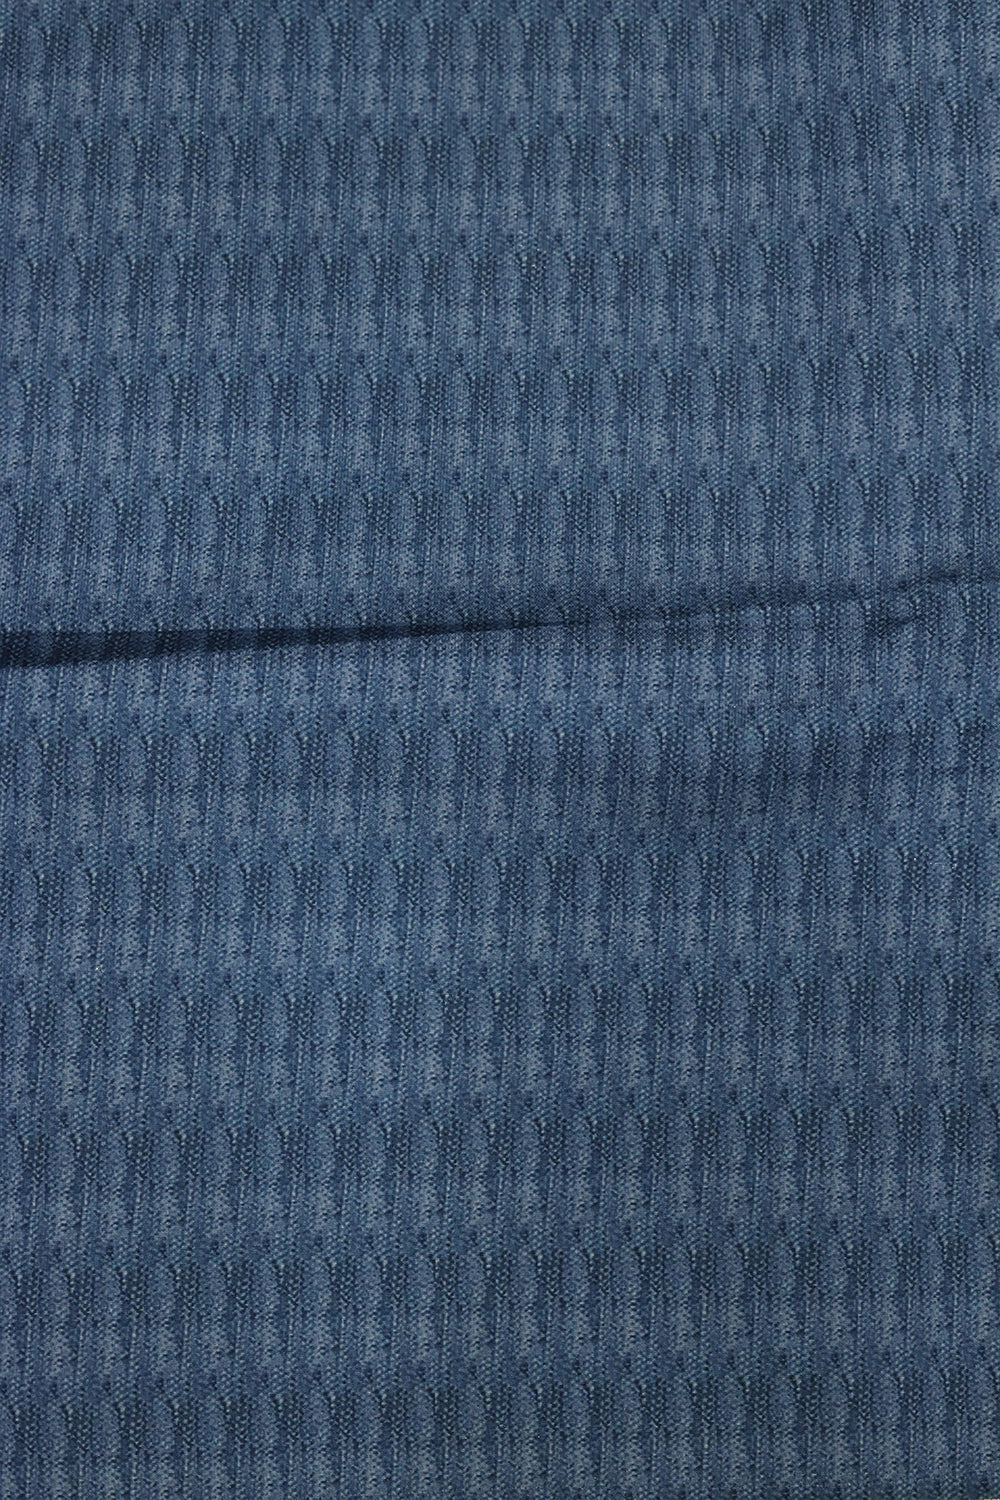 Blue Grey Tussar Silk Saree